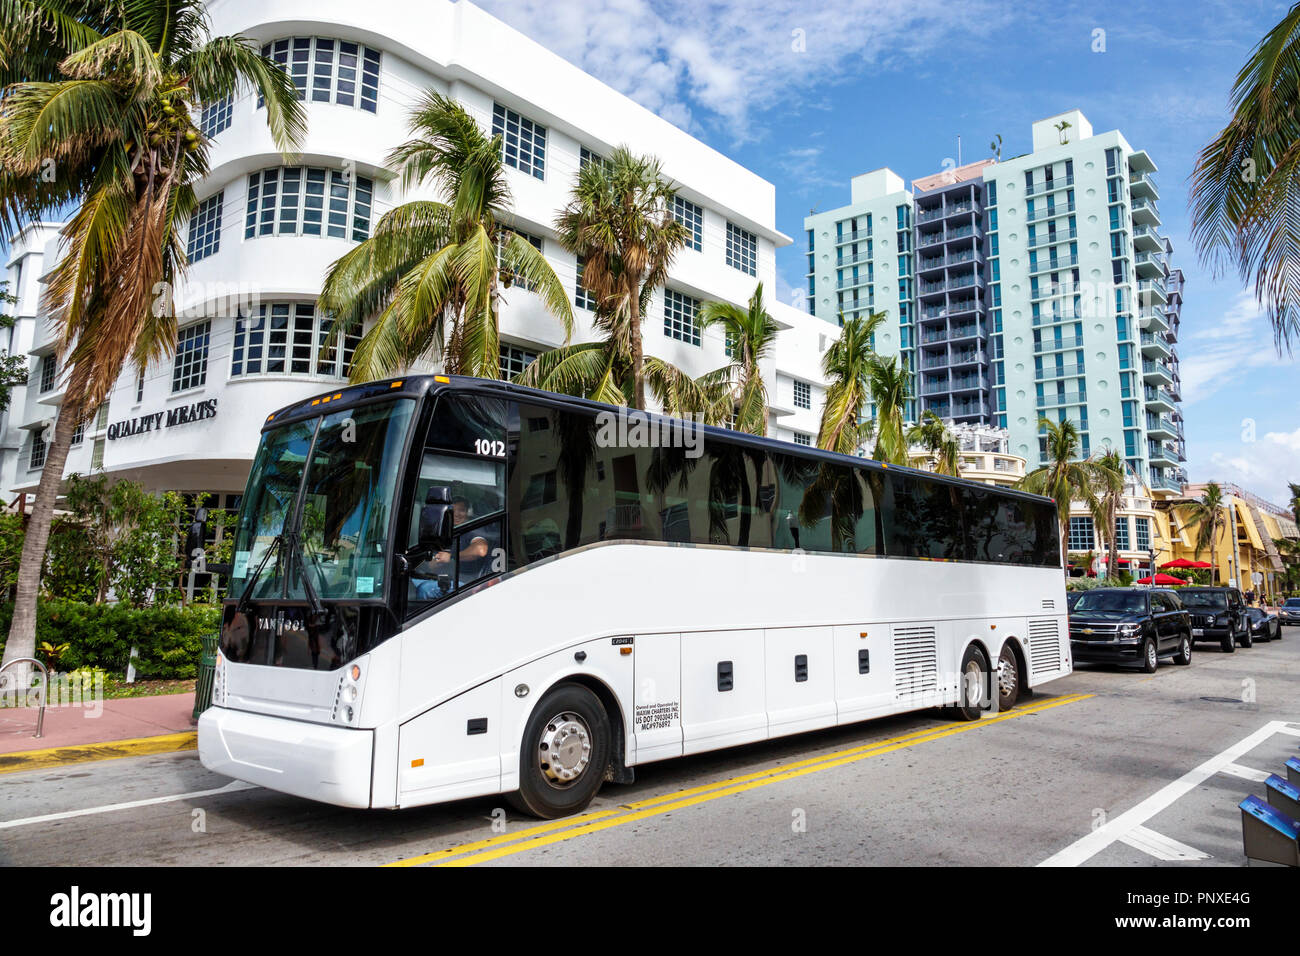 Miami Beach Florida, Collins Avenue, autocar, bus, les visiteurs voyage touristique touristique site touristique sites culturels culture, groupe de vacances pe Banque D'Images